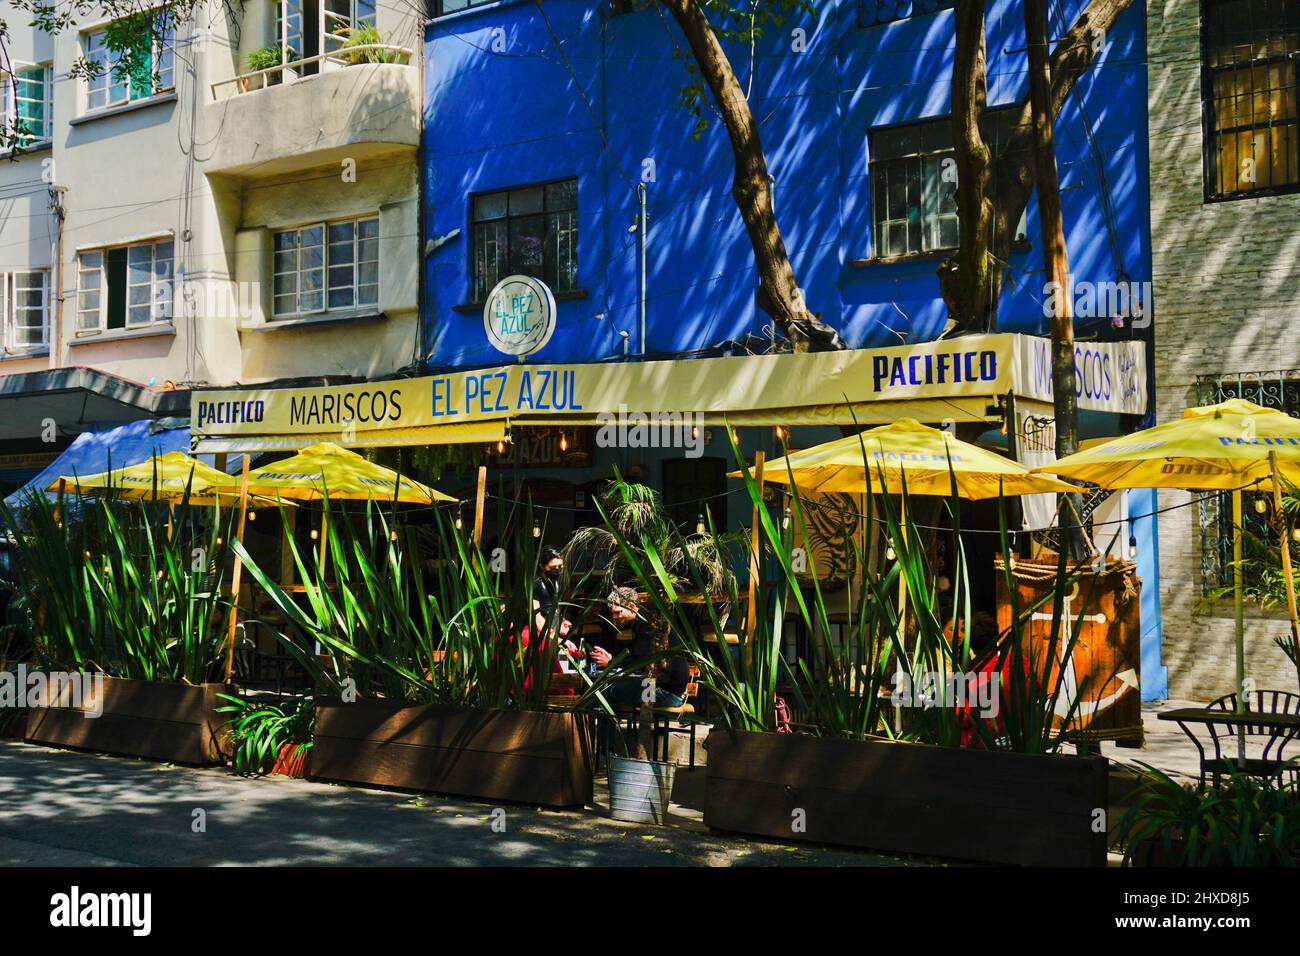 El Pez Azul seafood restaurant, Hipodromo neighborhood, in the Cuauhtemoc area, Ciudad de Mexico, CDMX Stock Photo